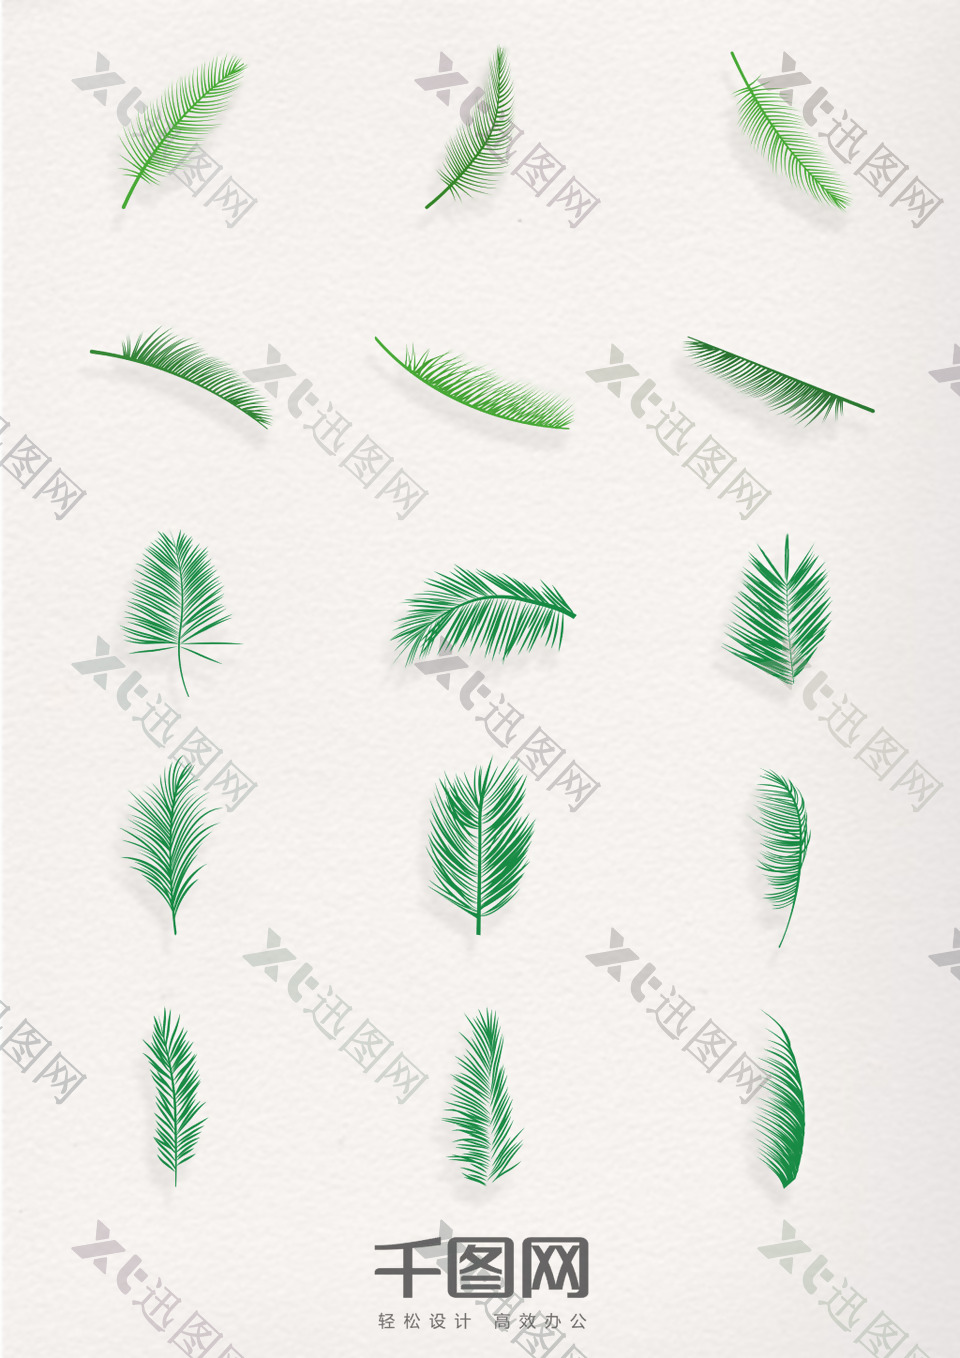 绿色棕榈树叶图标元素